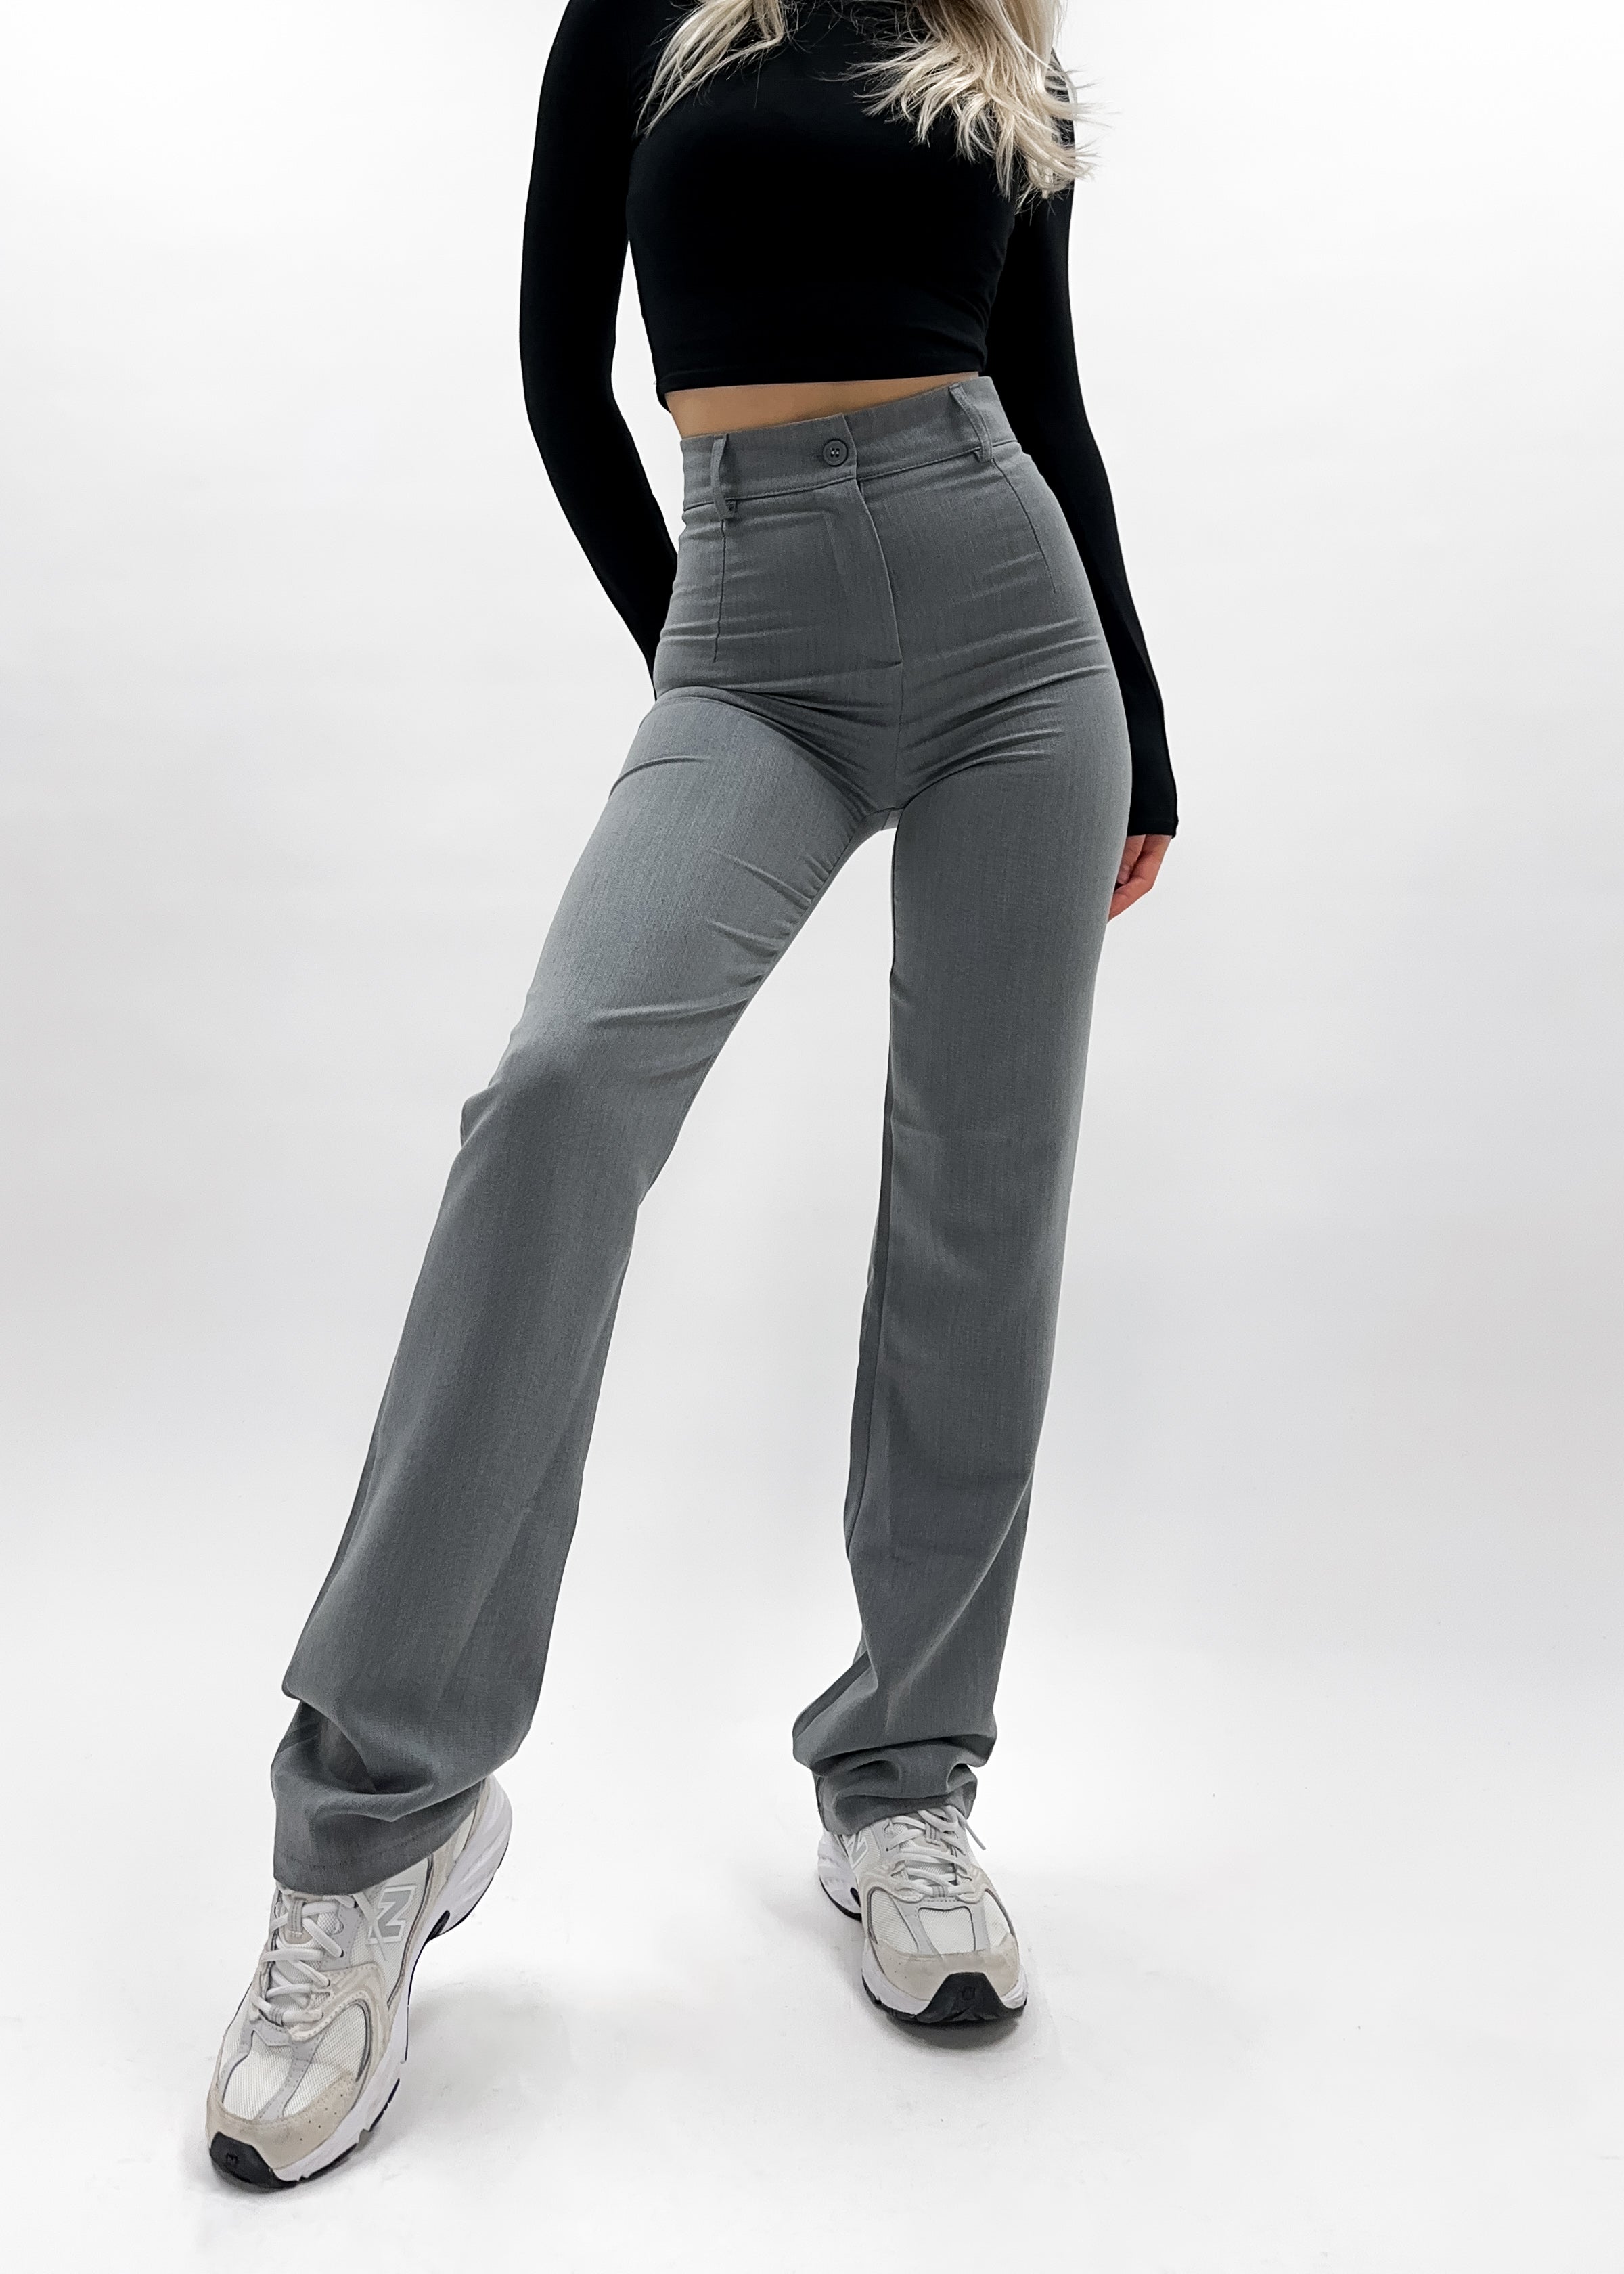 Pantalon droit classique gris clair délavé (TALL)